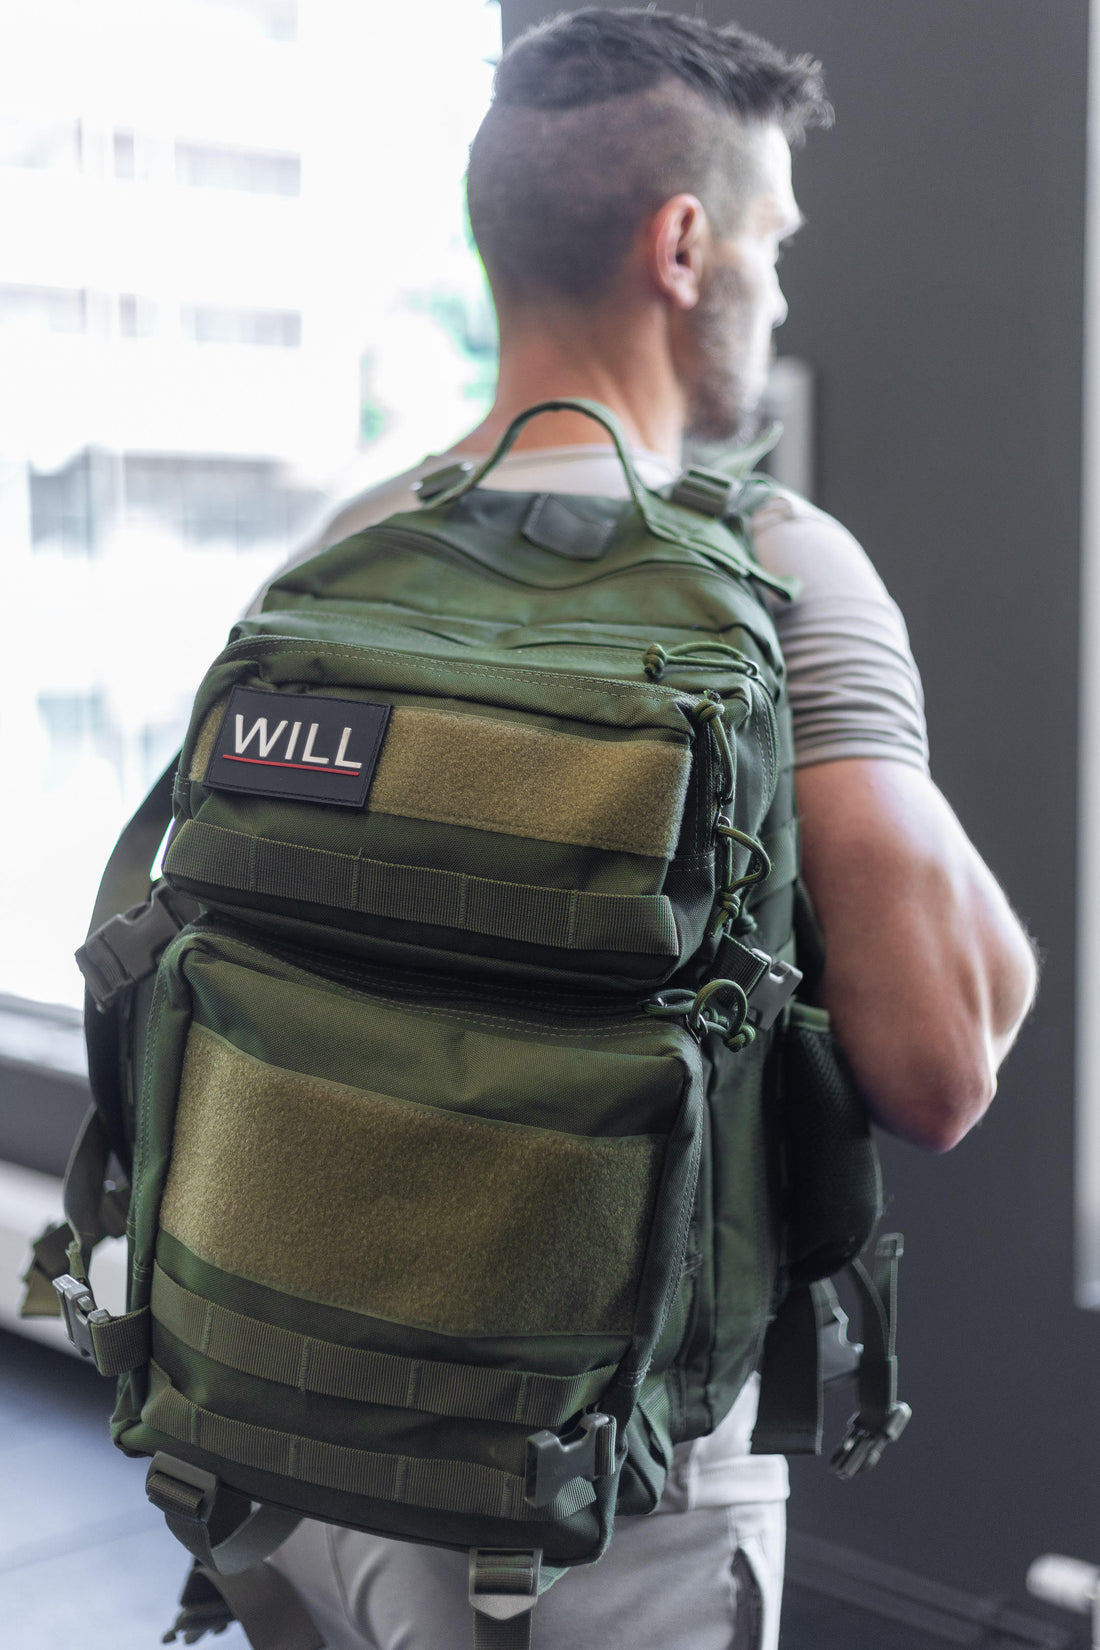 Alla användningsområden för en bra ryggsäck – från skola till vandring